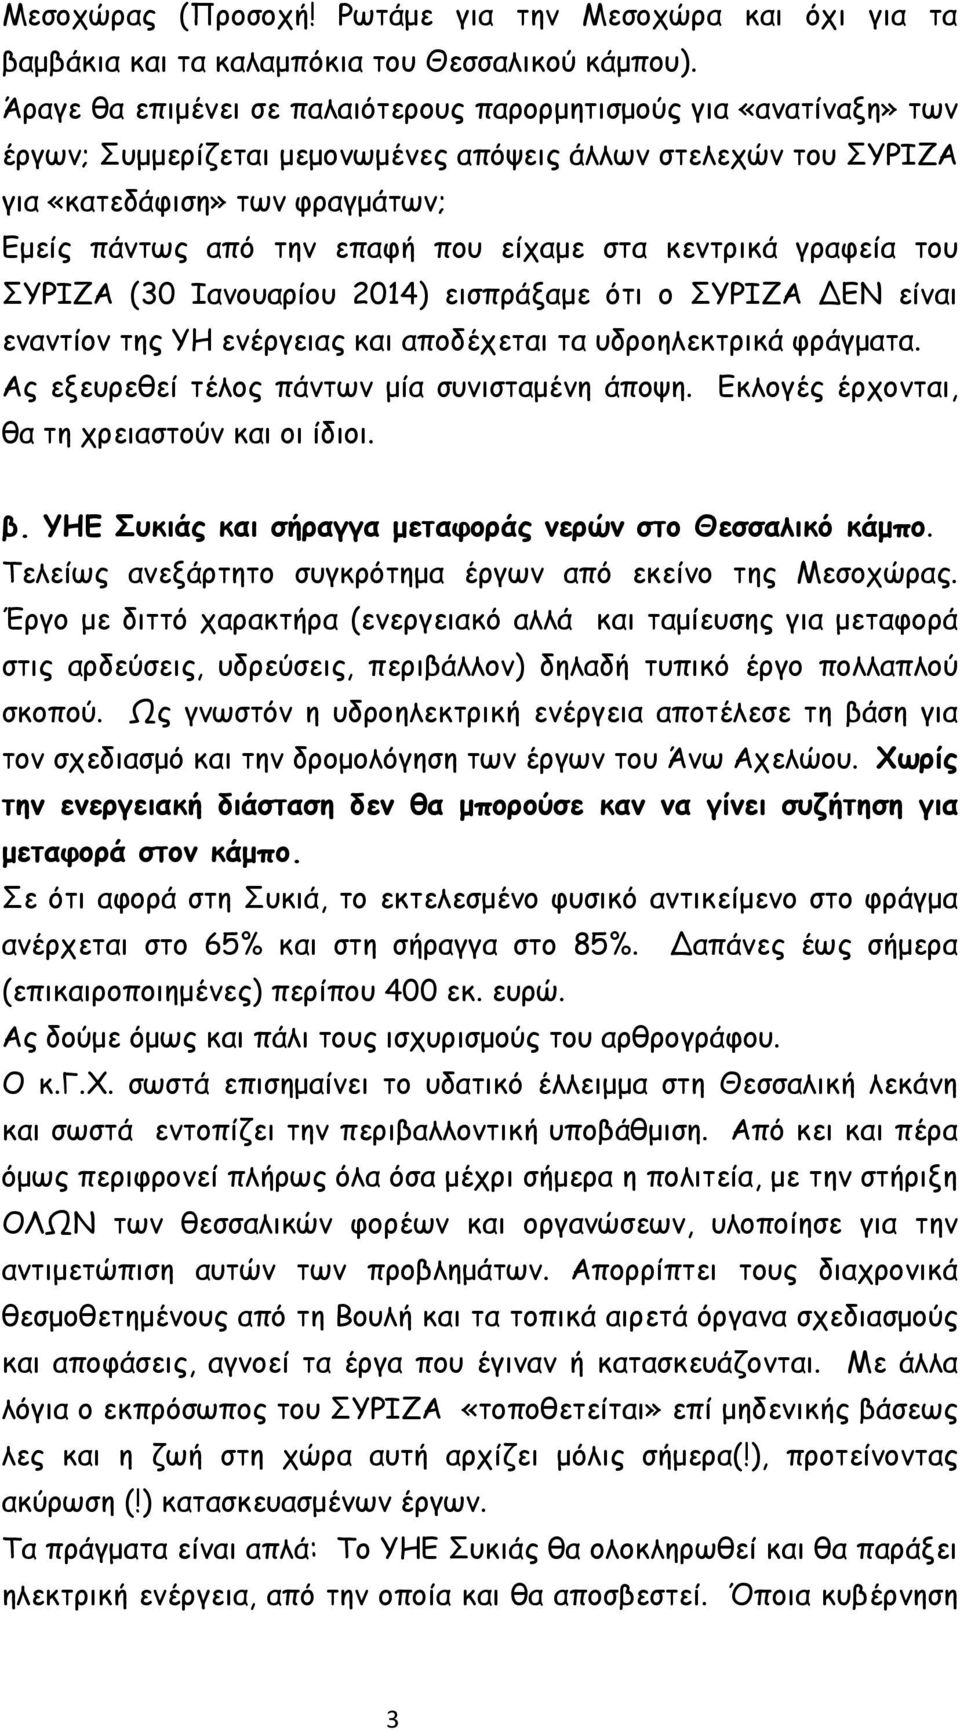 είχαμε στα κεντρικά γραφεία του ΣΥΡΙΖΑ (30 Ιανουαρίου 2014) εισπράξαμε ότι ο ΣΥΡΙΖΑ ΔΕΝ είναι εναντίον της ΥΗ ενέργειας και αποδέχεται τα υδροηλεκτρικά φράγματα.